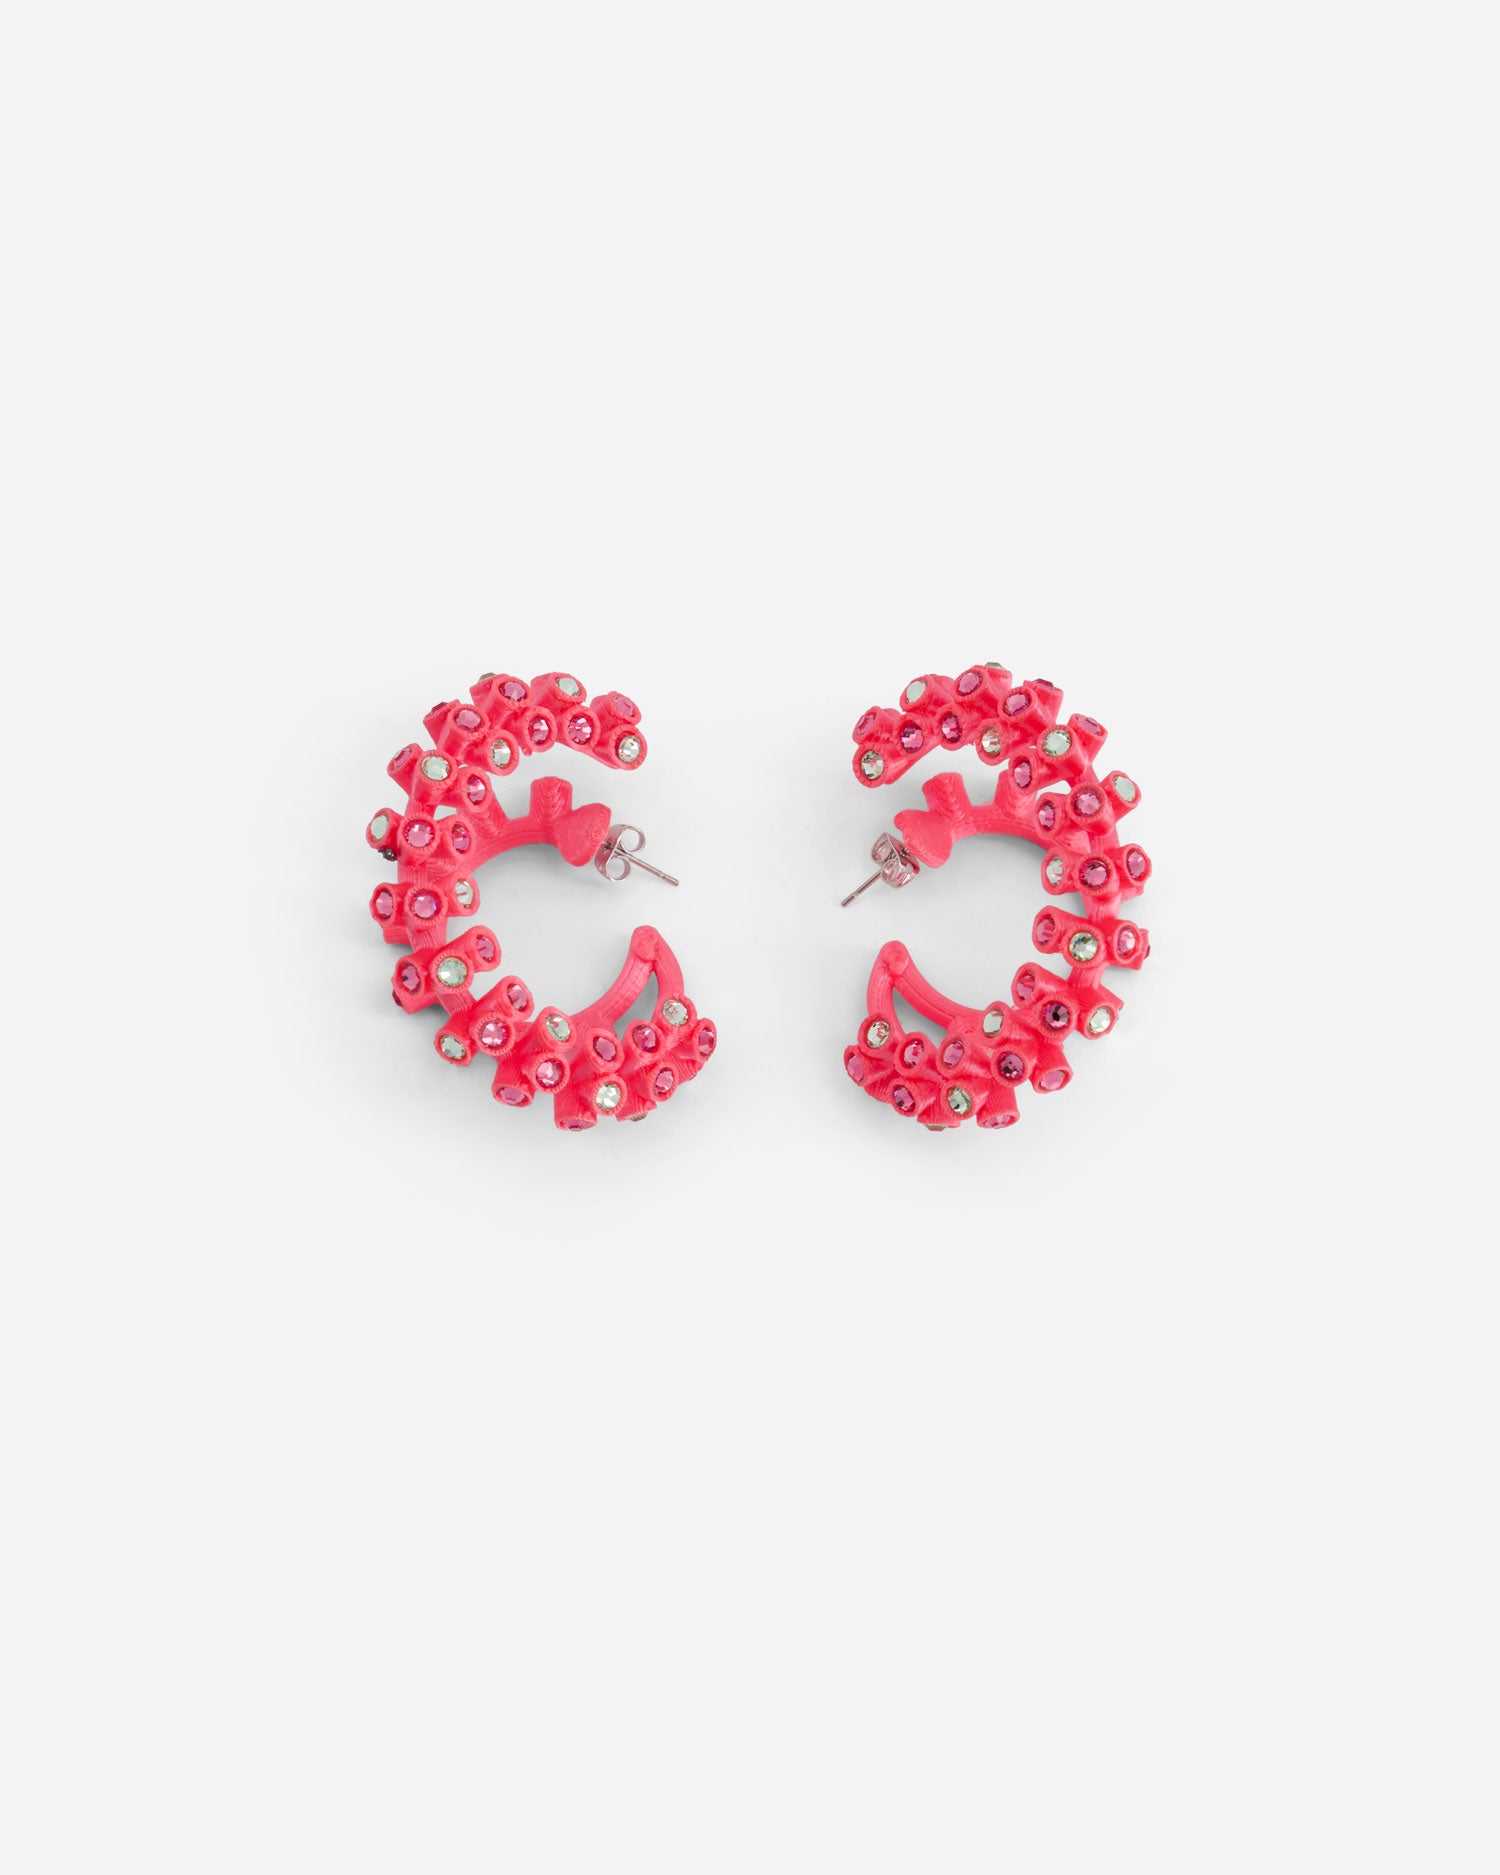 Double Snacc Earrings - Jewelry - Roussey - Elevastor